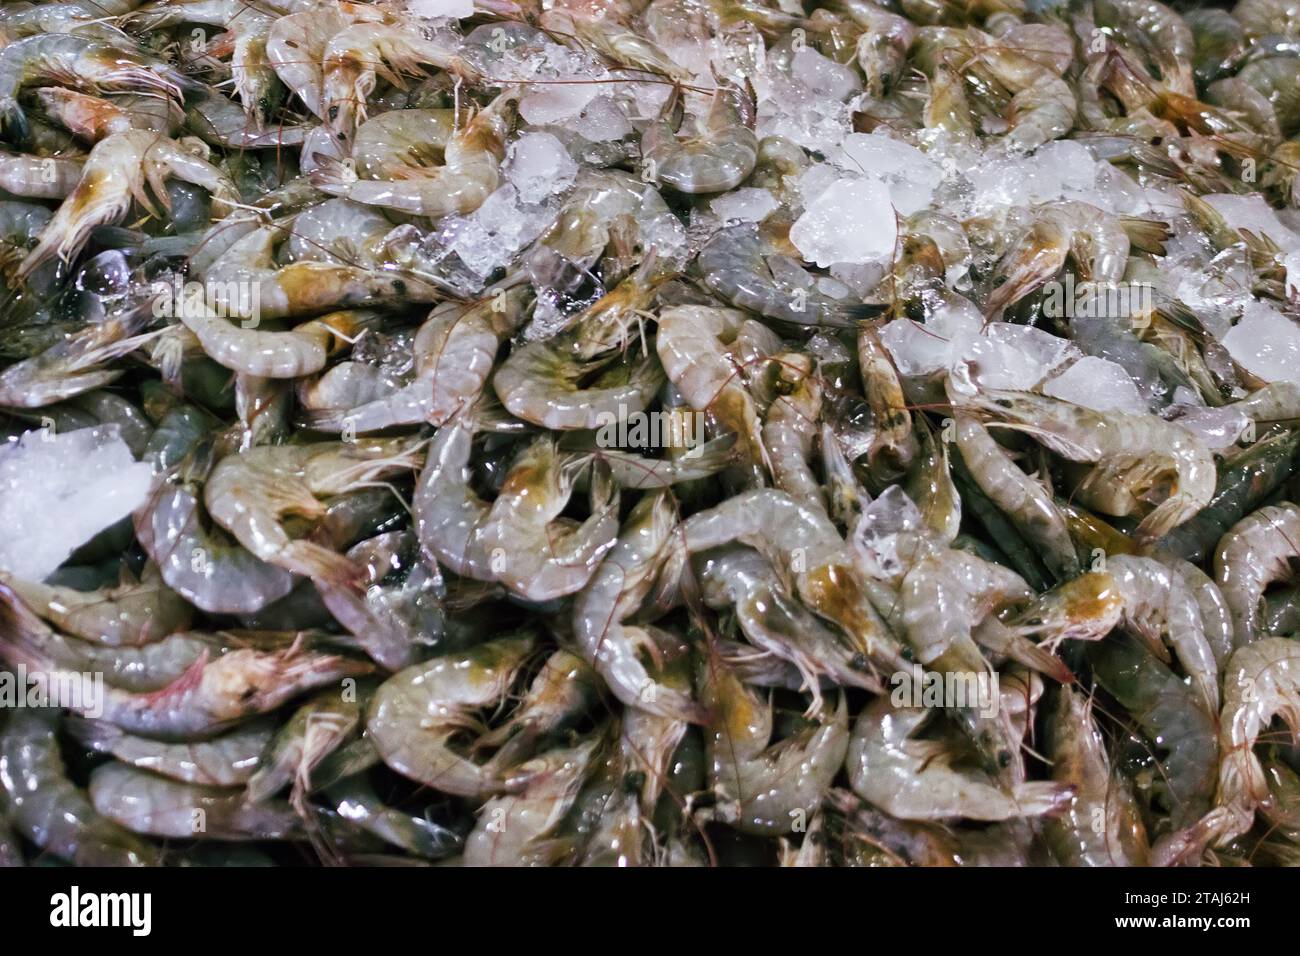 Regali del mare (gamberetti oceanici). Vari frutti di mare nei mercati del sud-est asiatico, i cosiddetti 'mercati umidi'. Thailandia Foto Stock